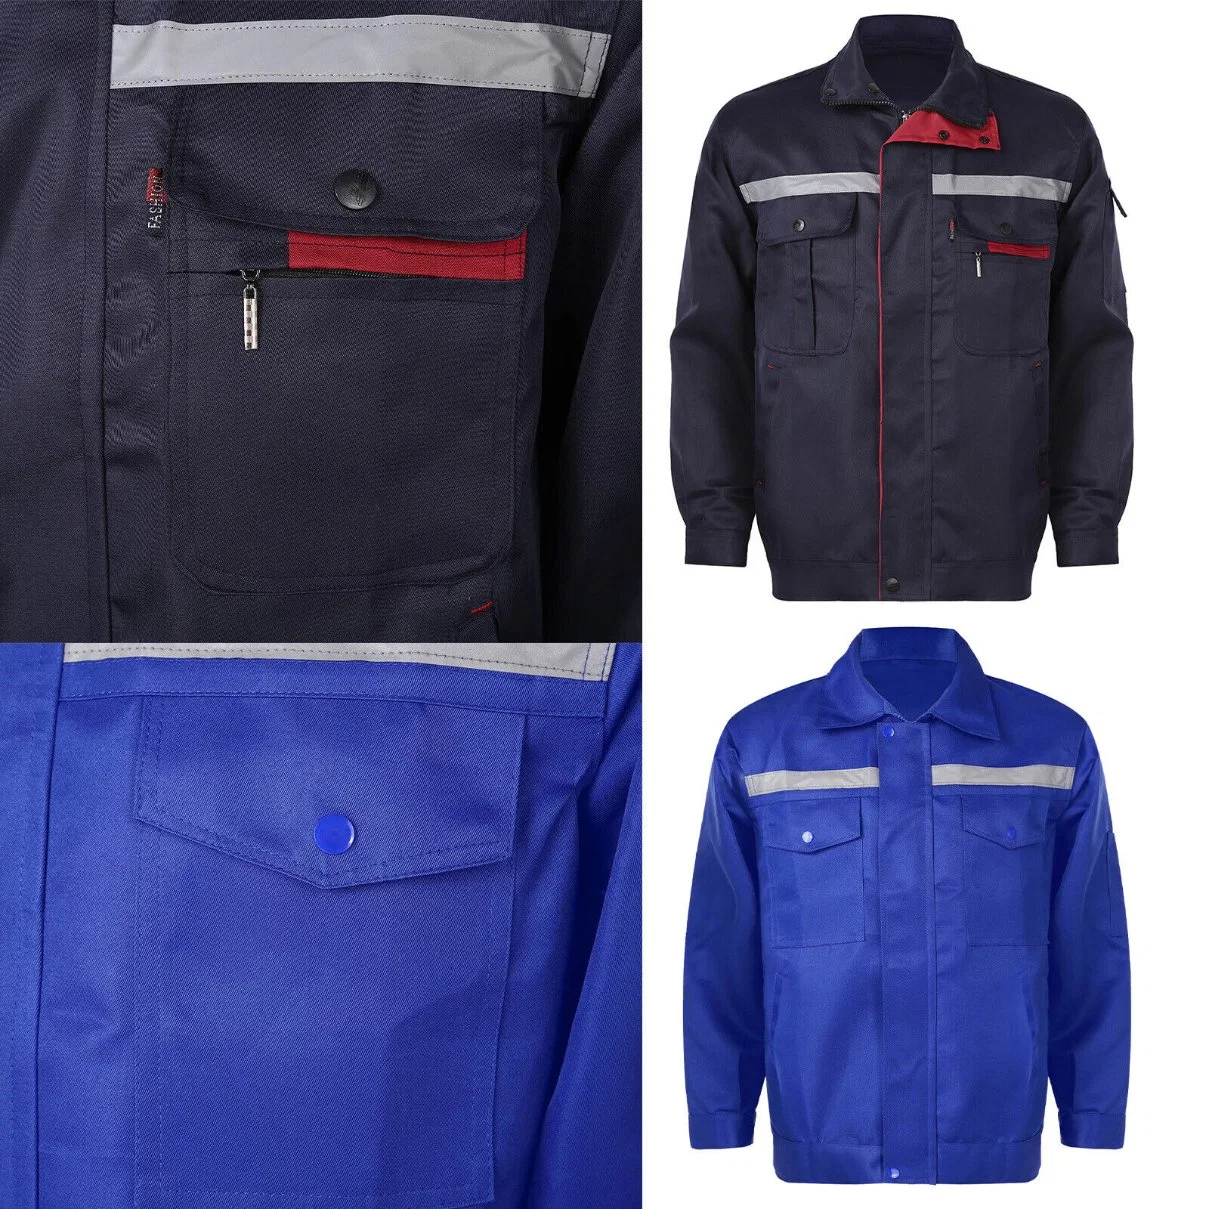 Herren Industrial Uniform Reflective Stripe Work Jacket Shirt Workwear Oberteile Mäntel